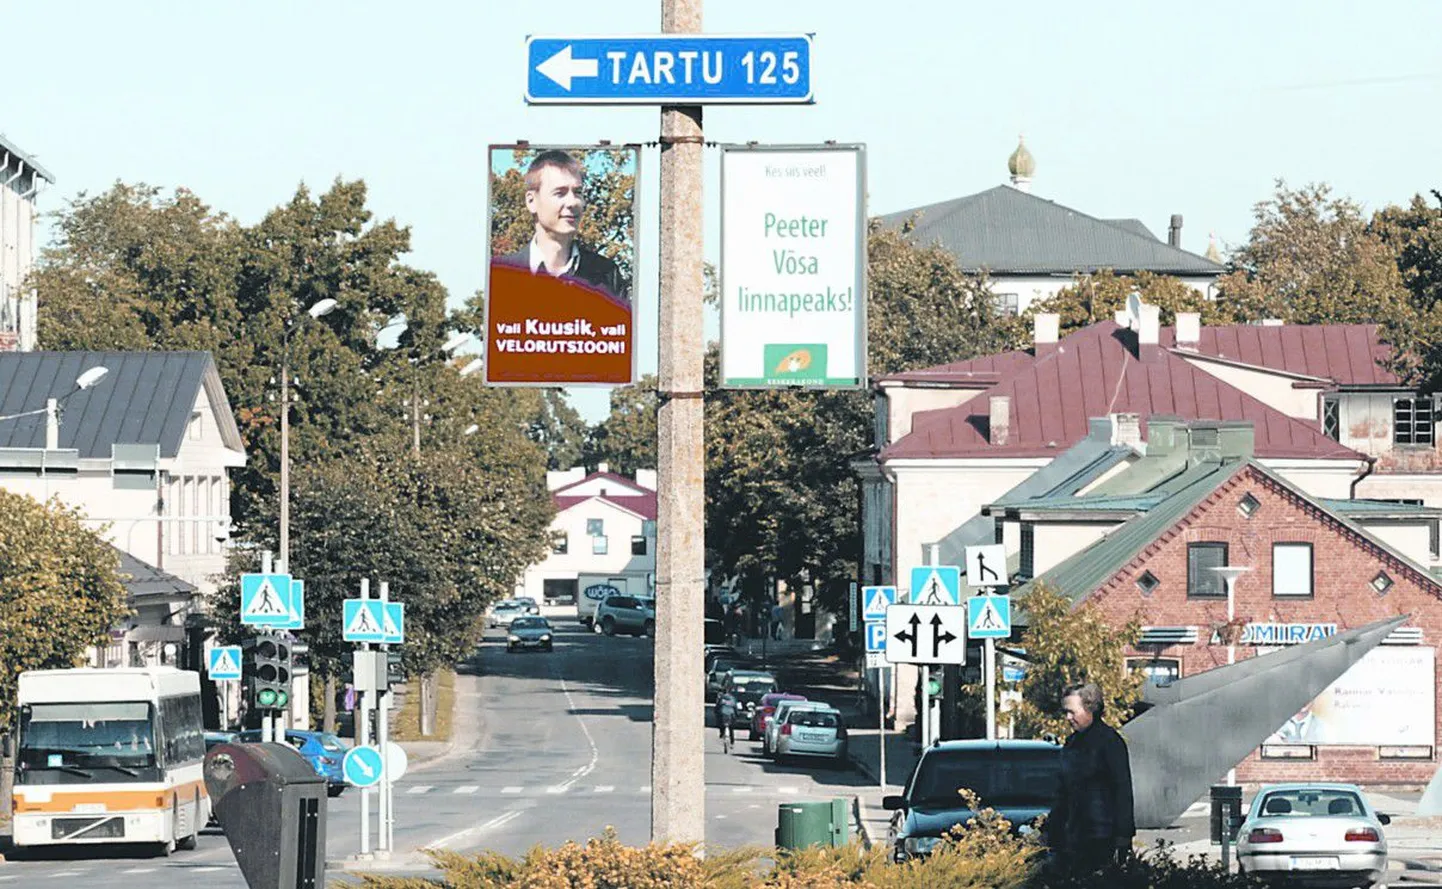 То, что в стране полным ходом идет предвыборная кампания, можно заметить во всех городах Эстонии.